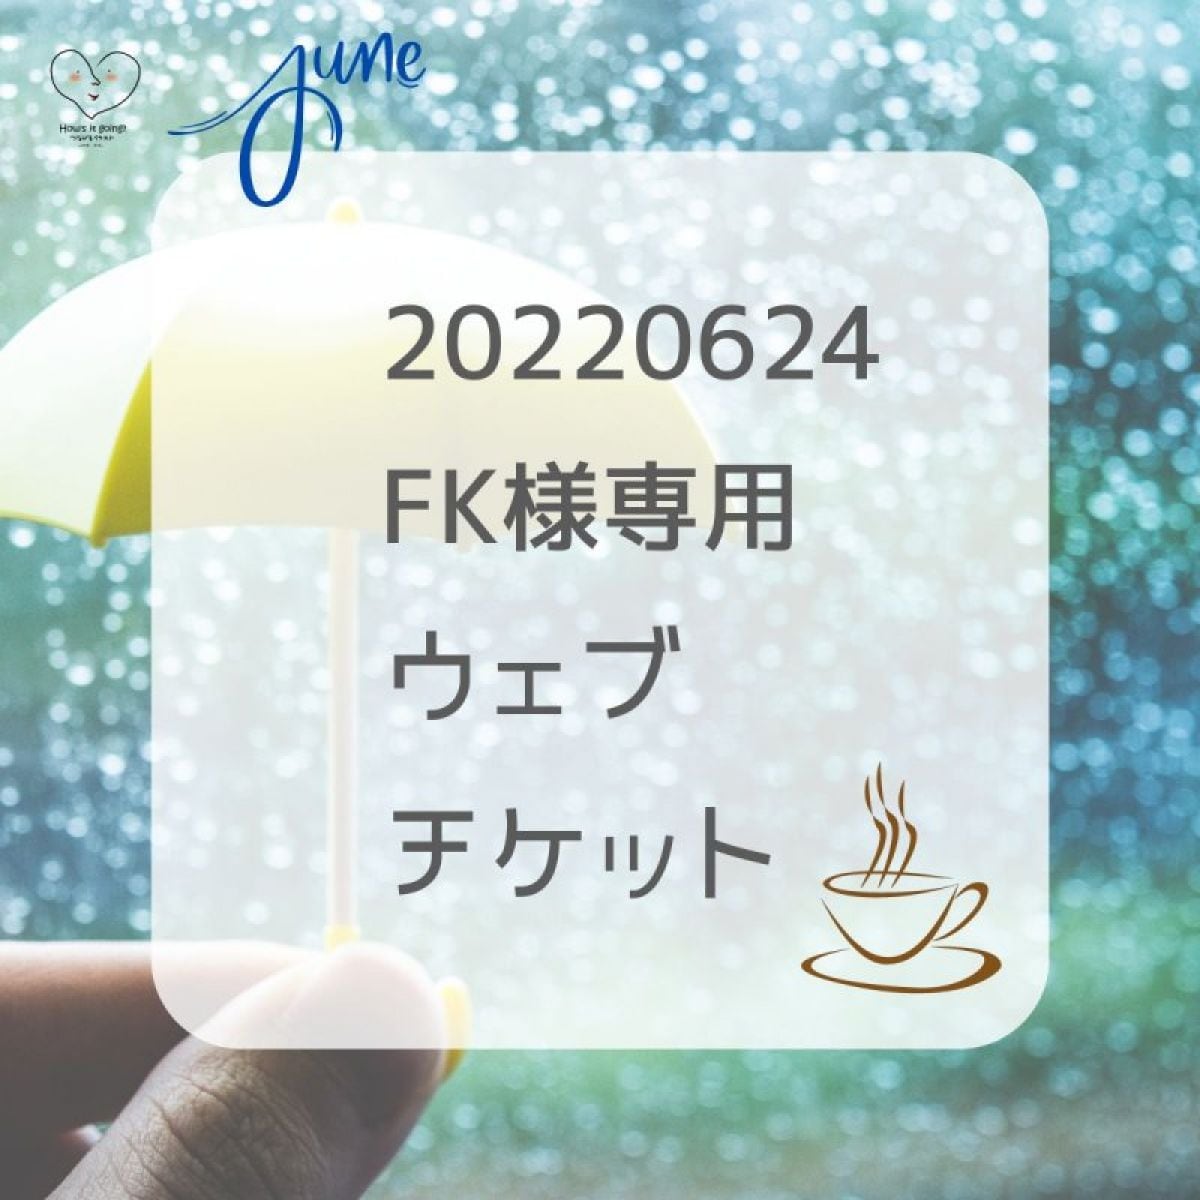 20220624 FK 様専用ウェブチケット(コーヒー発注代行+パッケージイラスト作成)